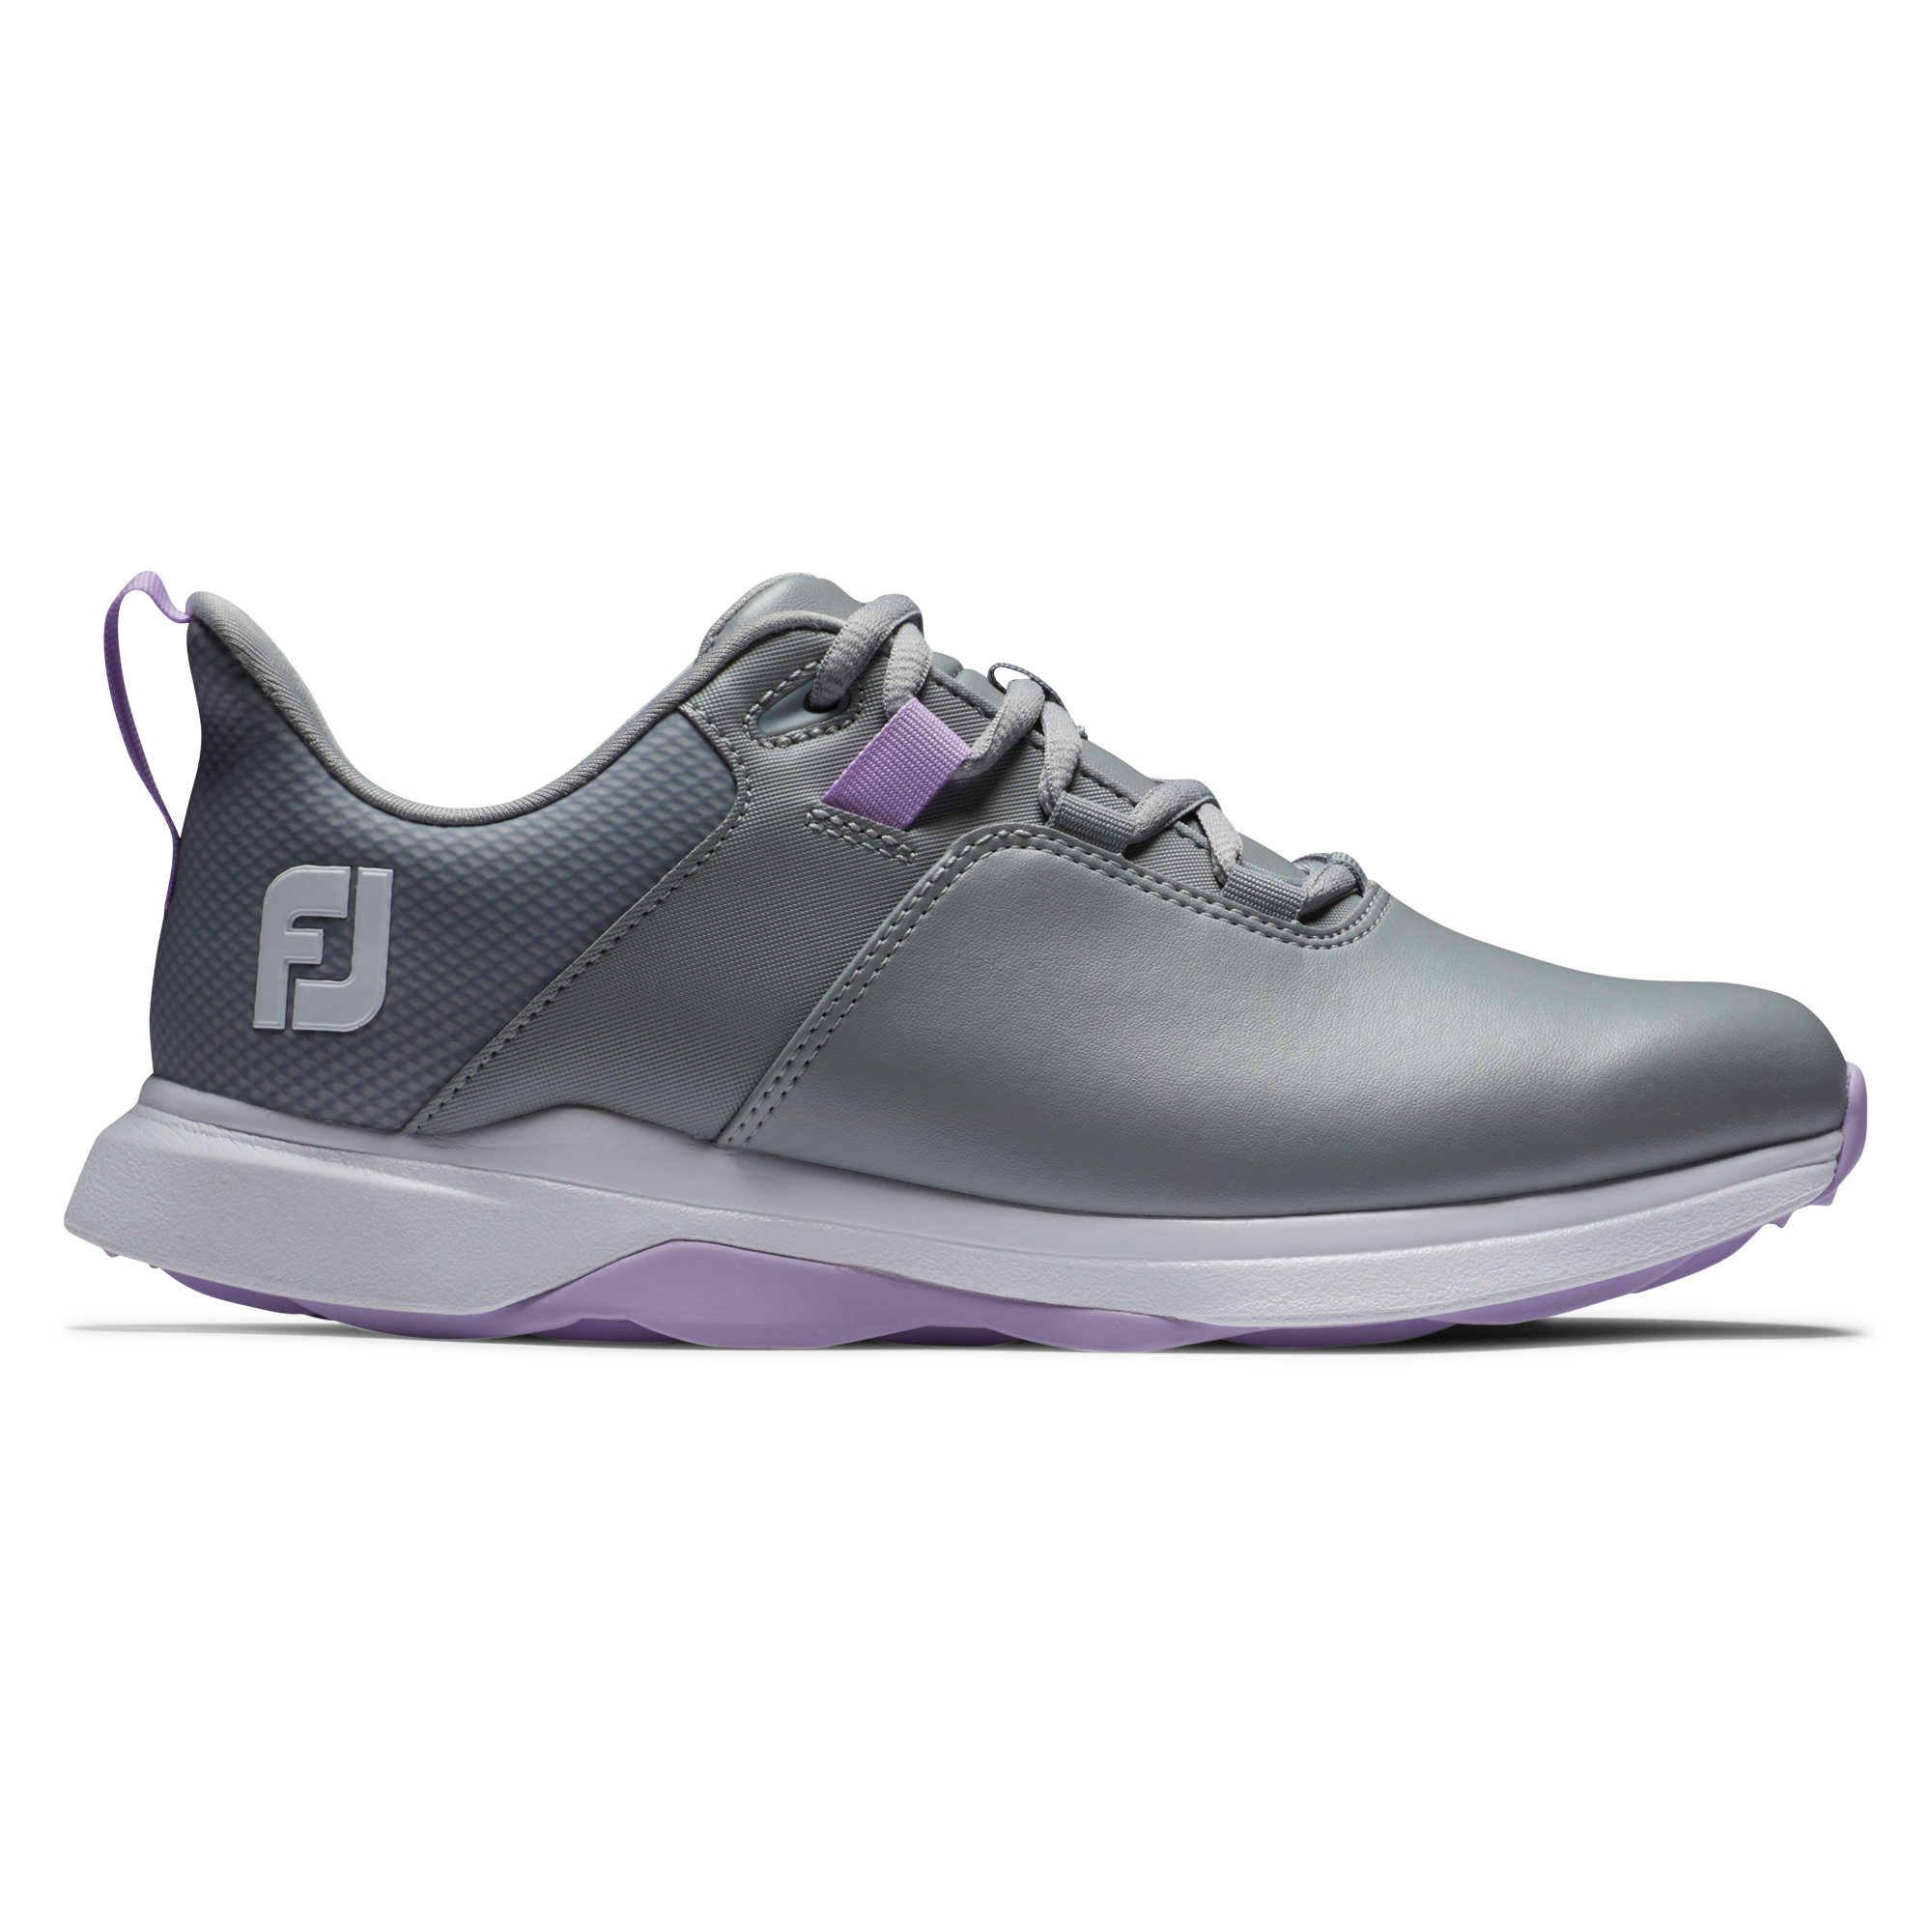 FootJoy ProLite dámské golfové boty, šedé, vel. 7 UK